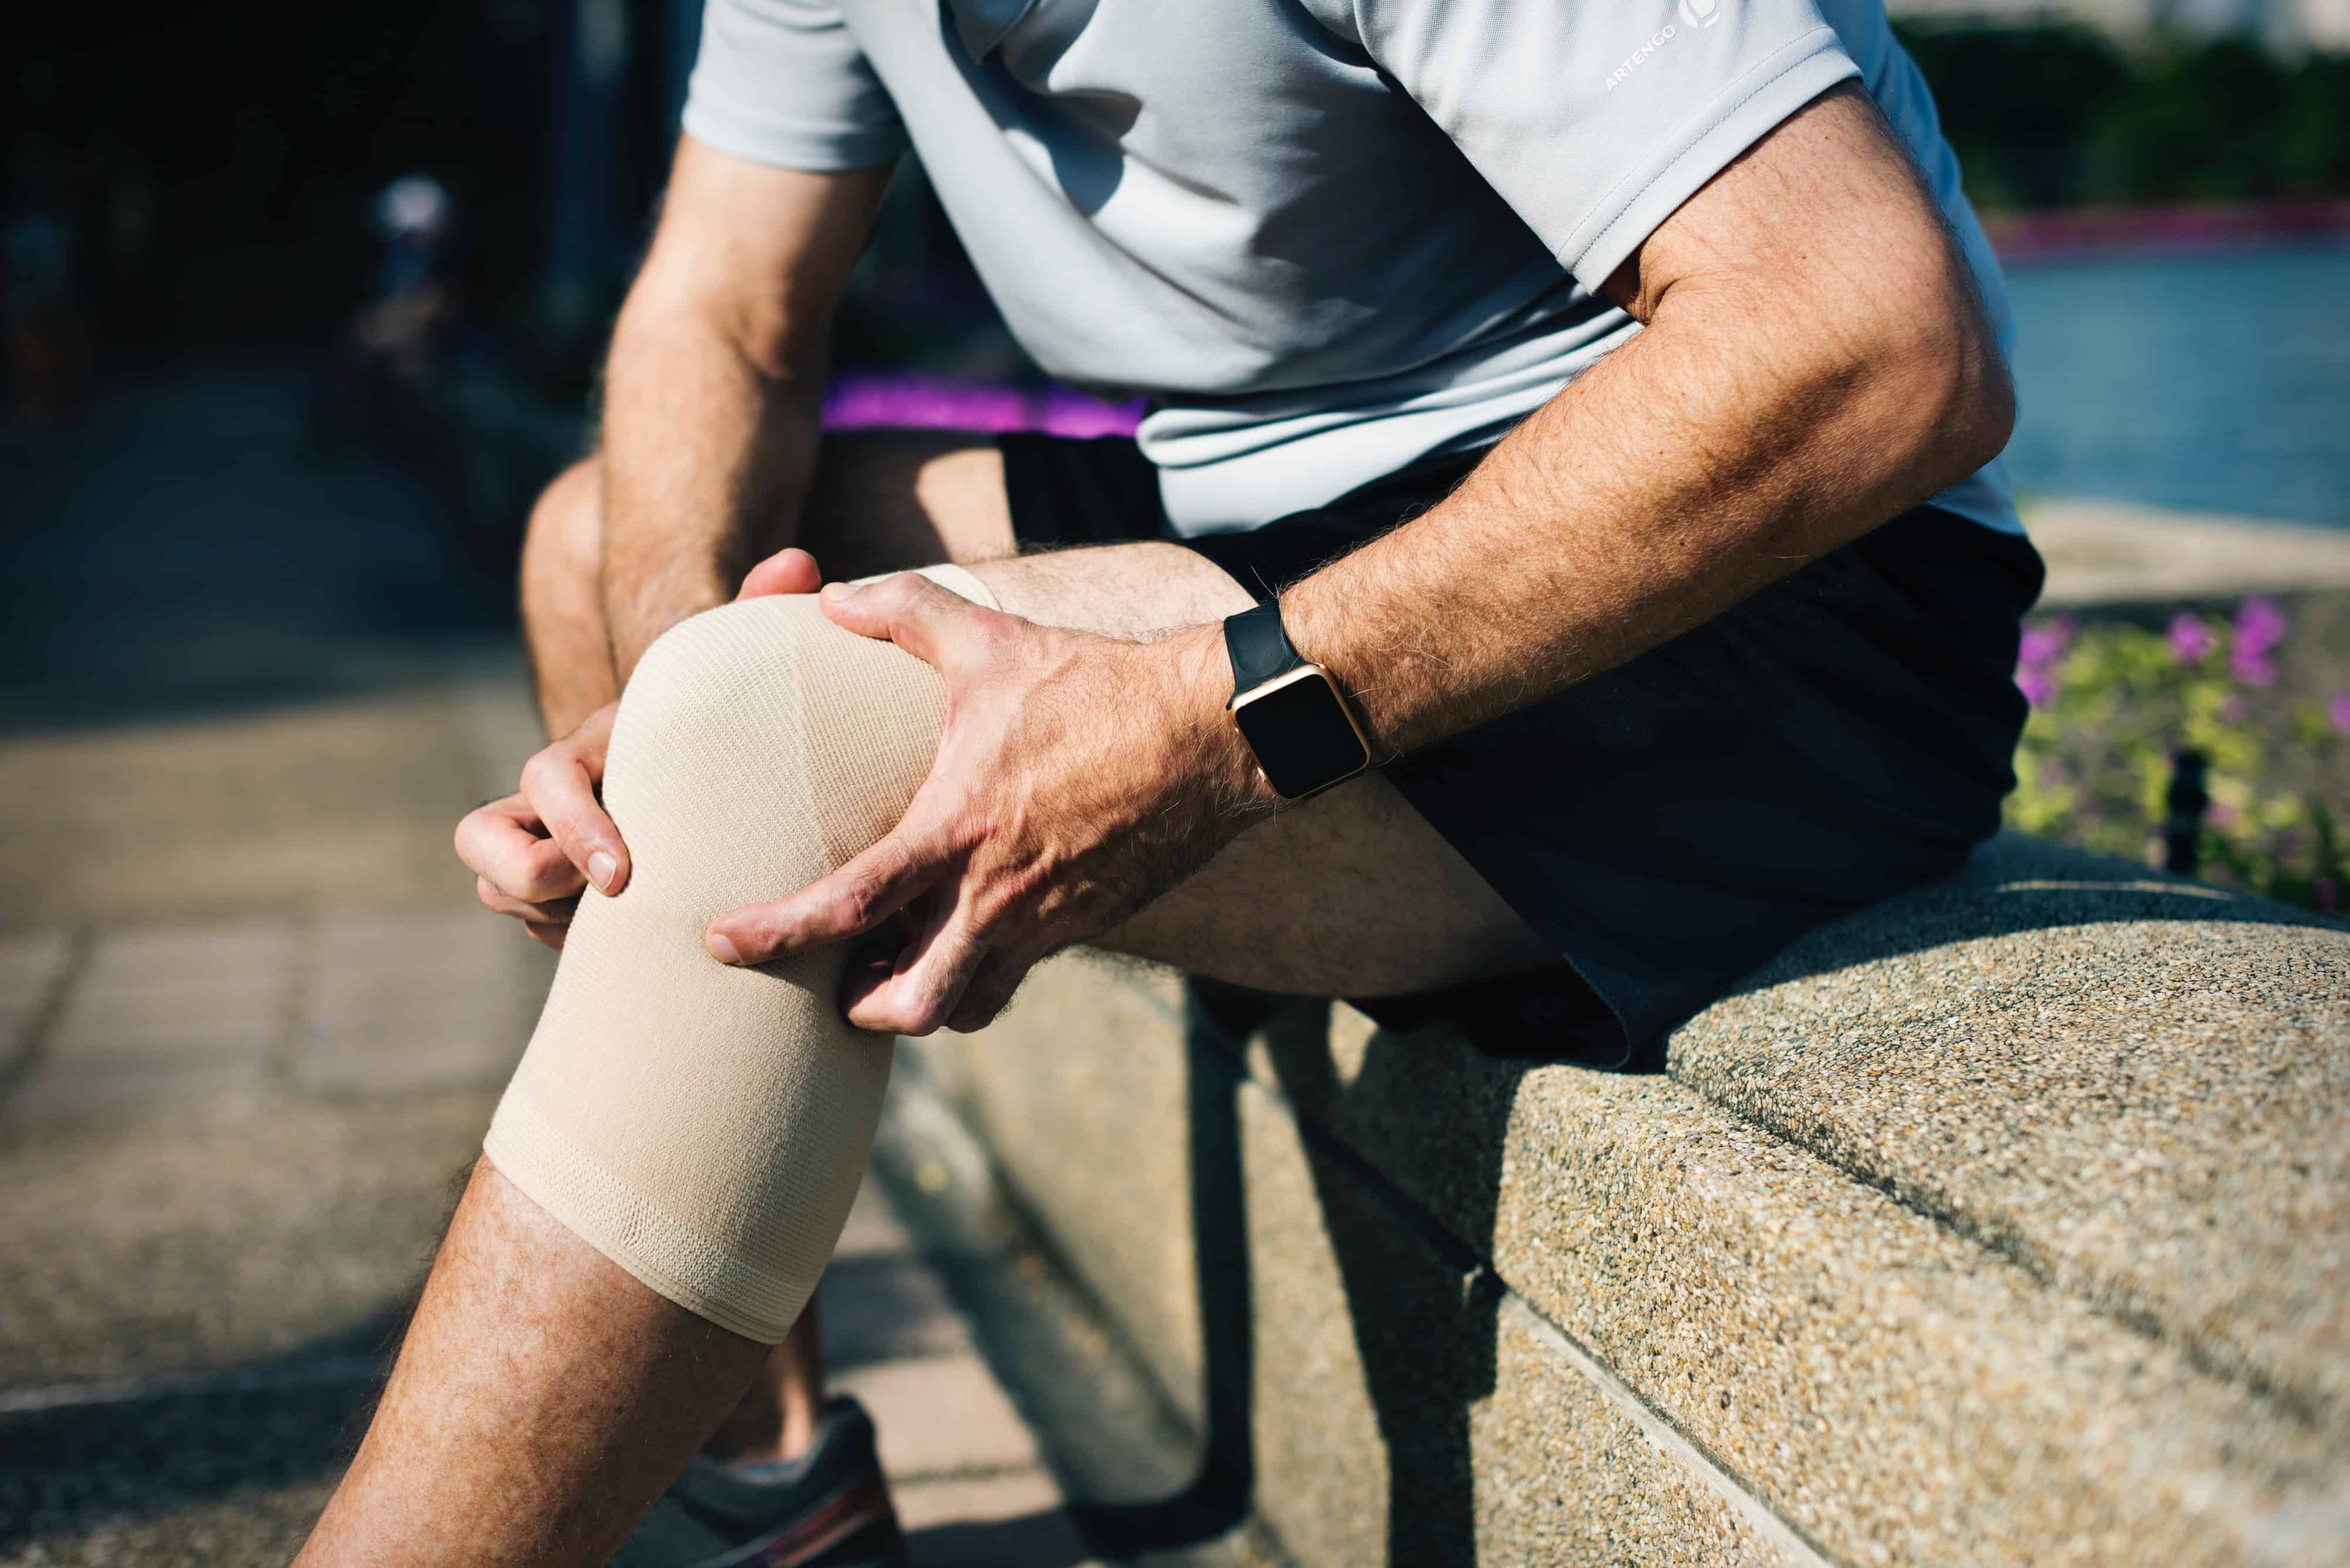 Bolna koljena: Glavni uzroci i pomoć